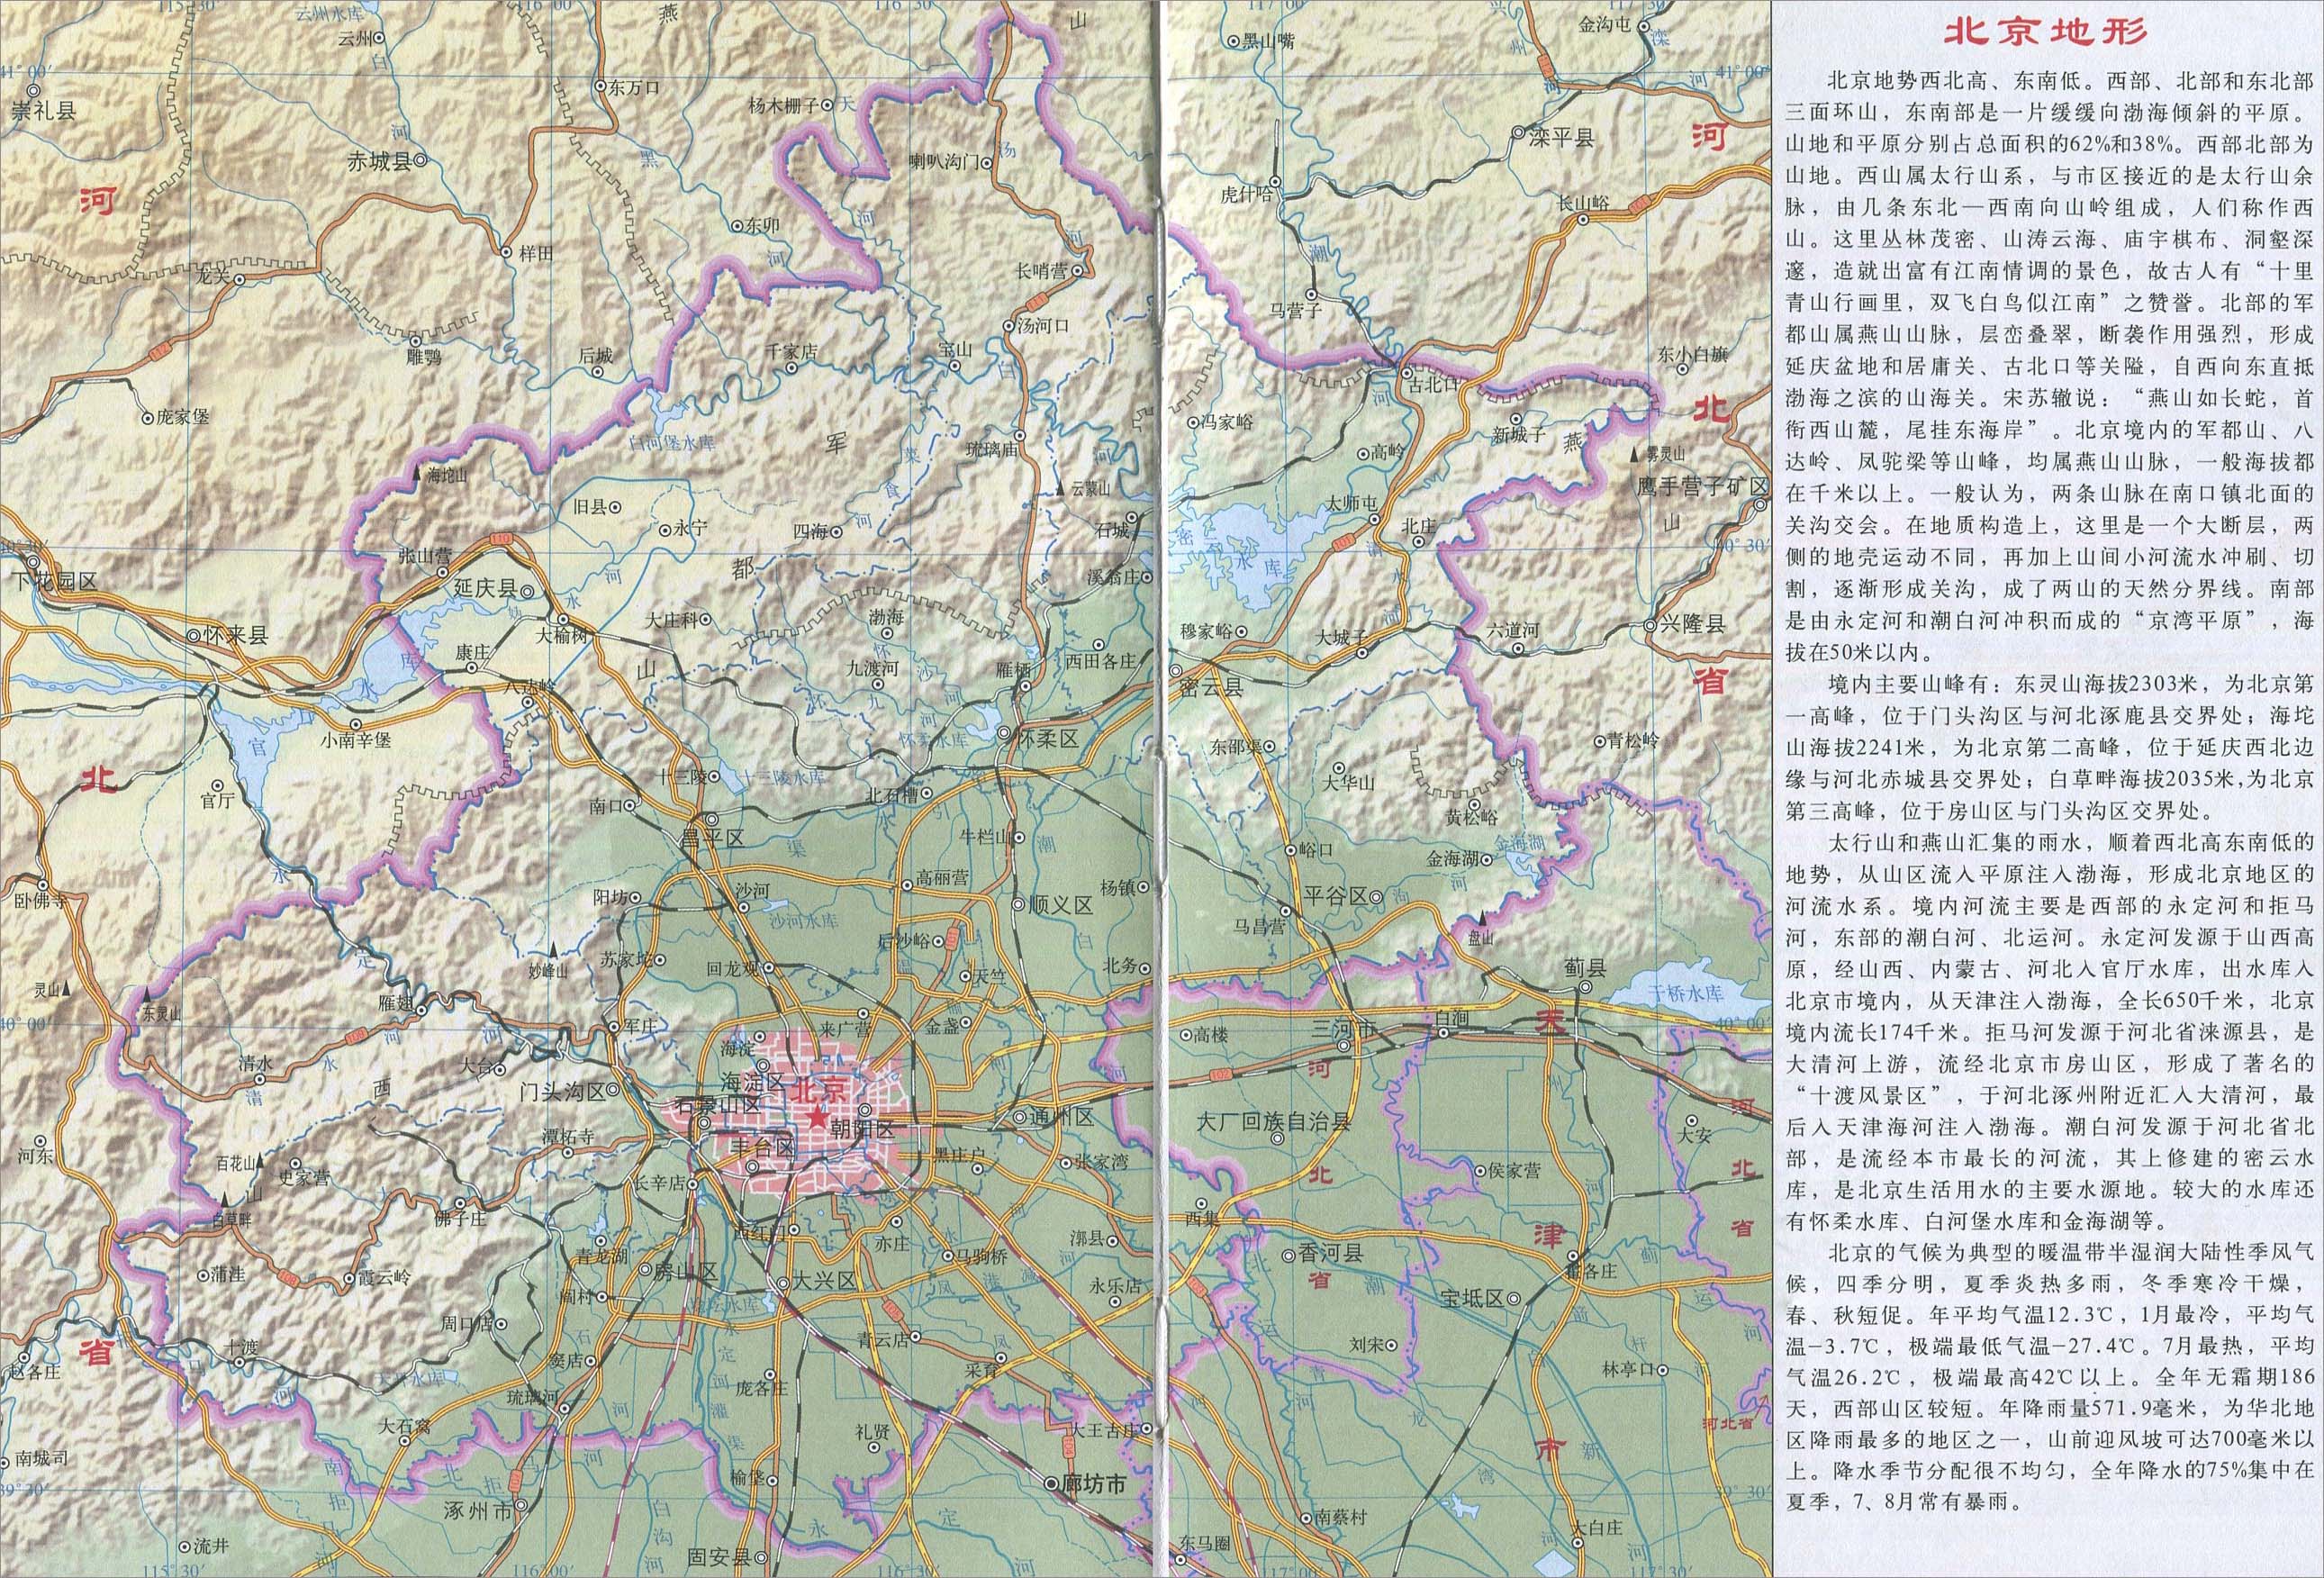 中国地图 北京 >> 北京市地形图  相关链接: 中国  北京  上海  天津图片